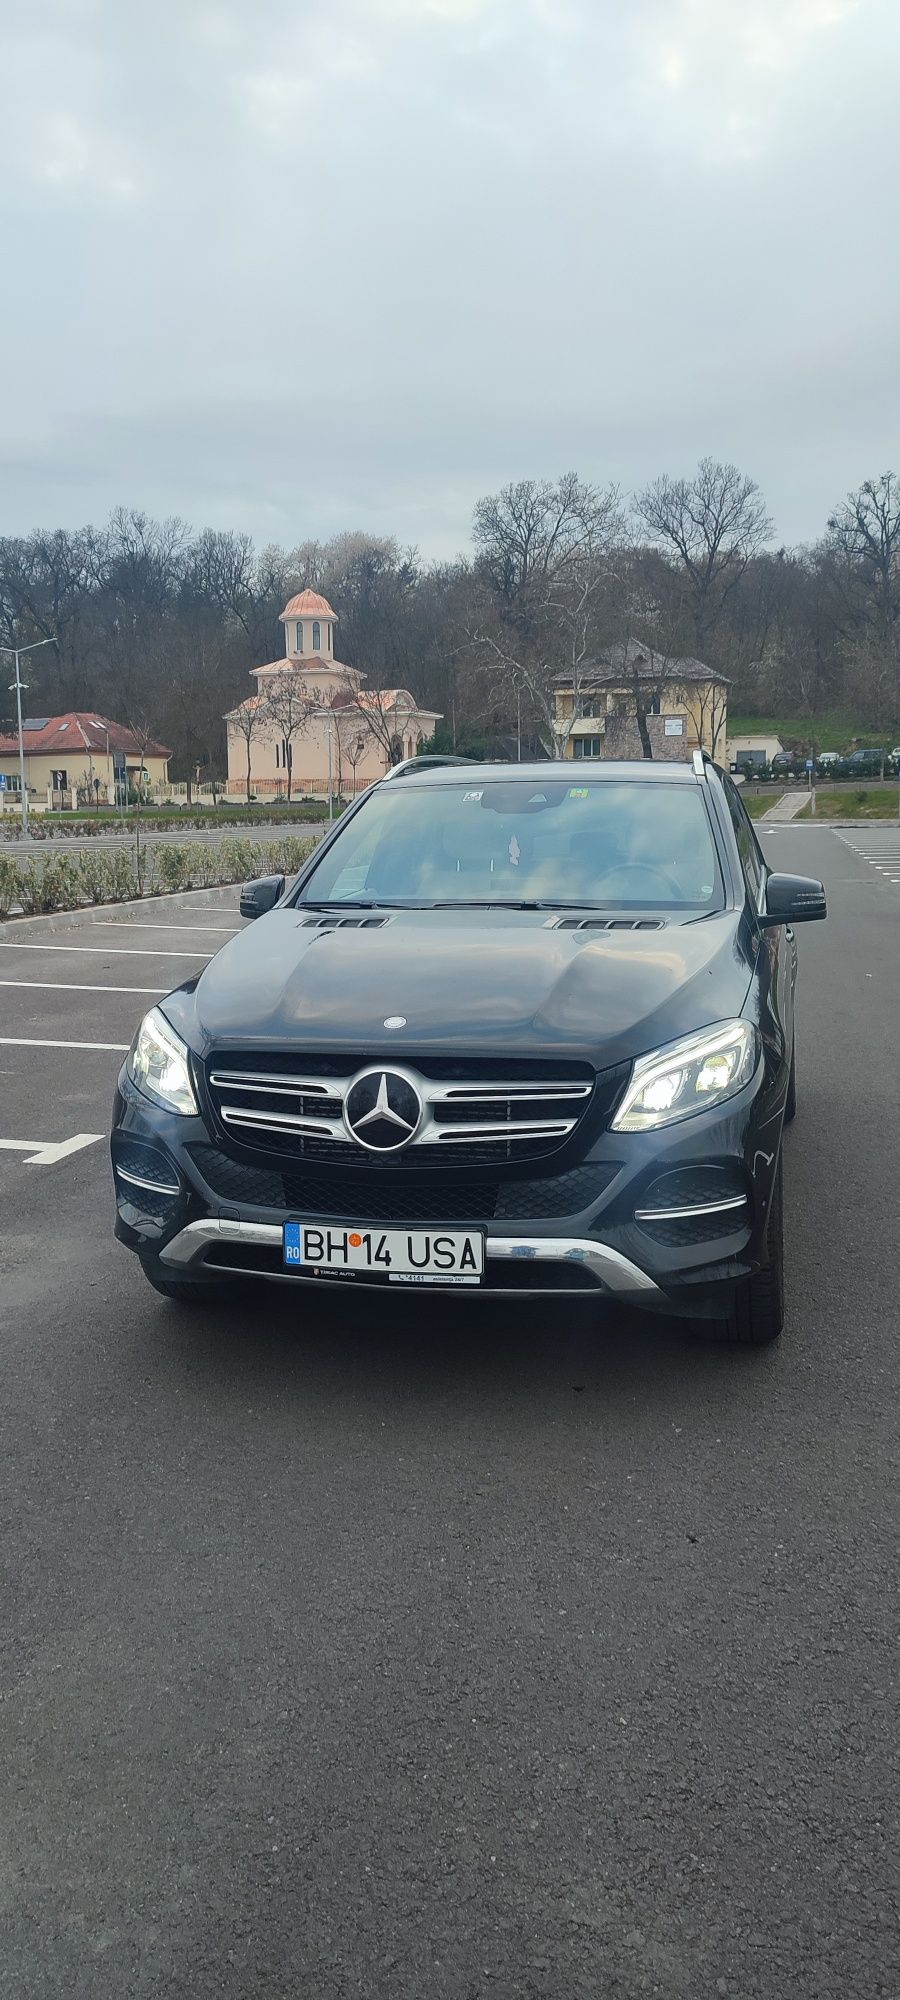 Mercedes GLE 2016 3.0 diesel